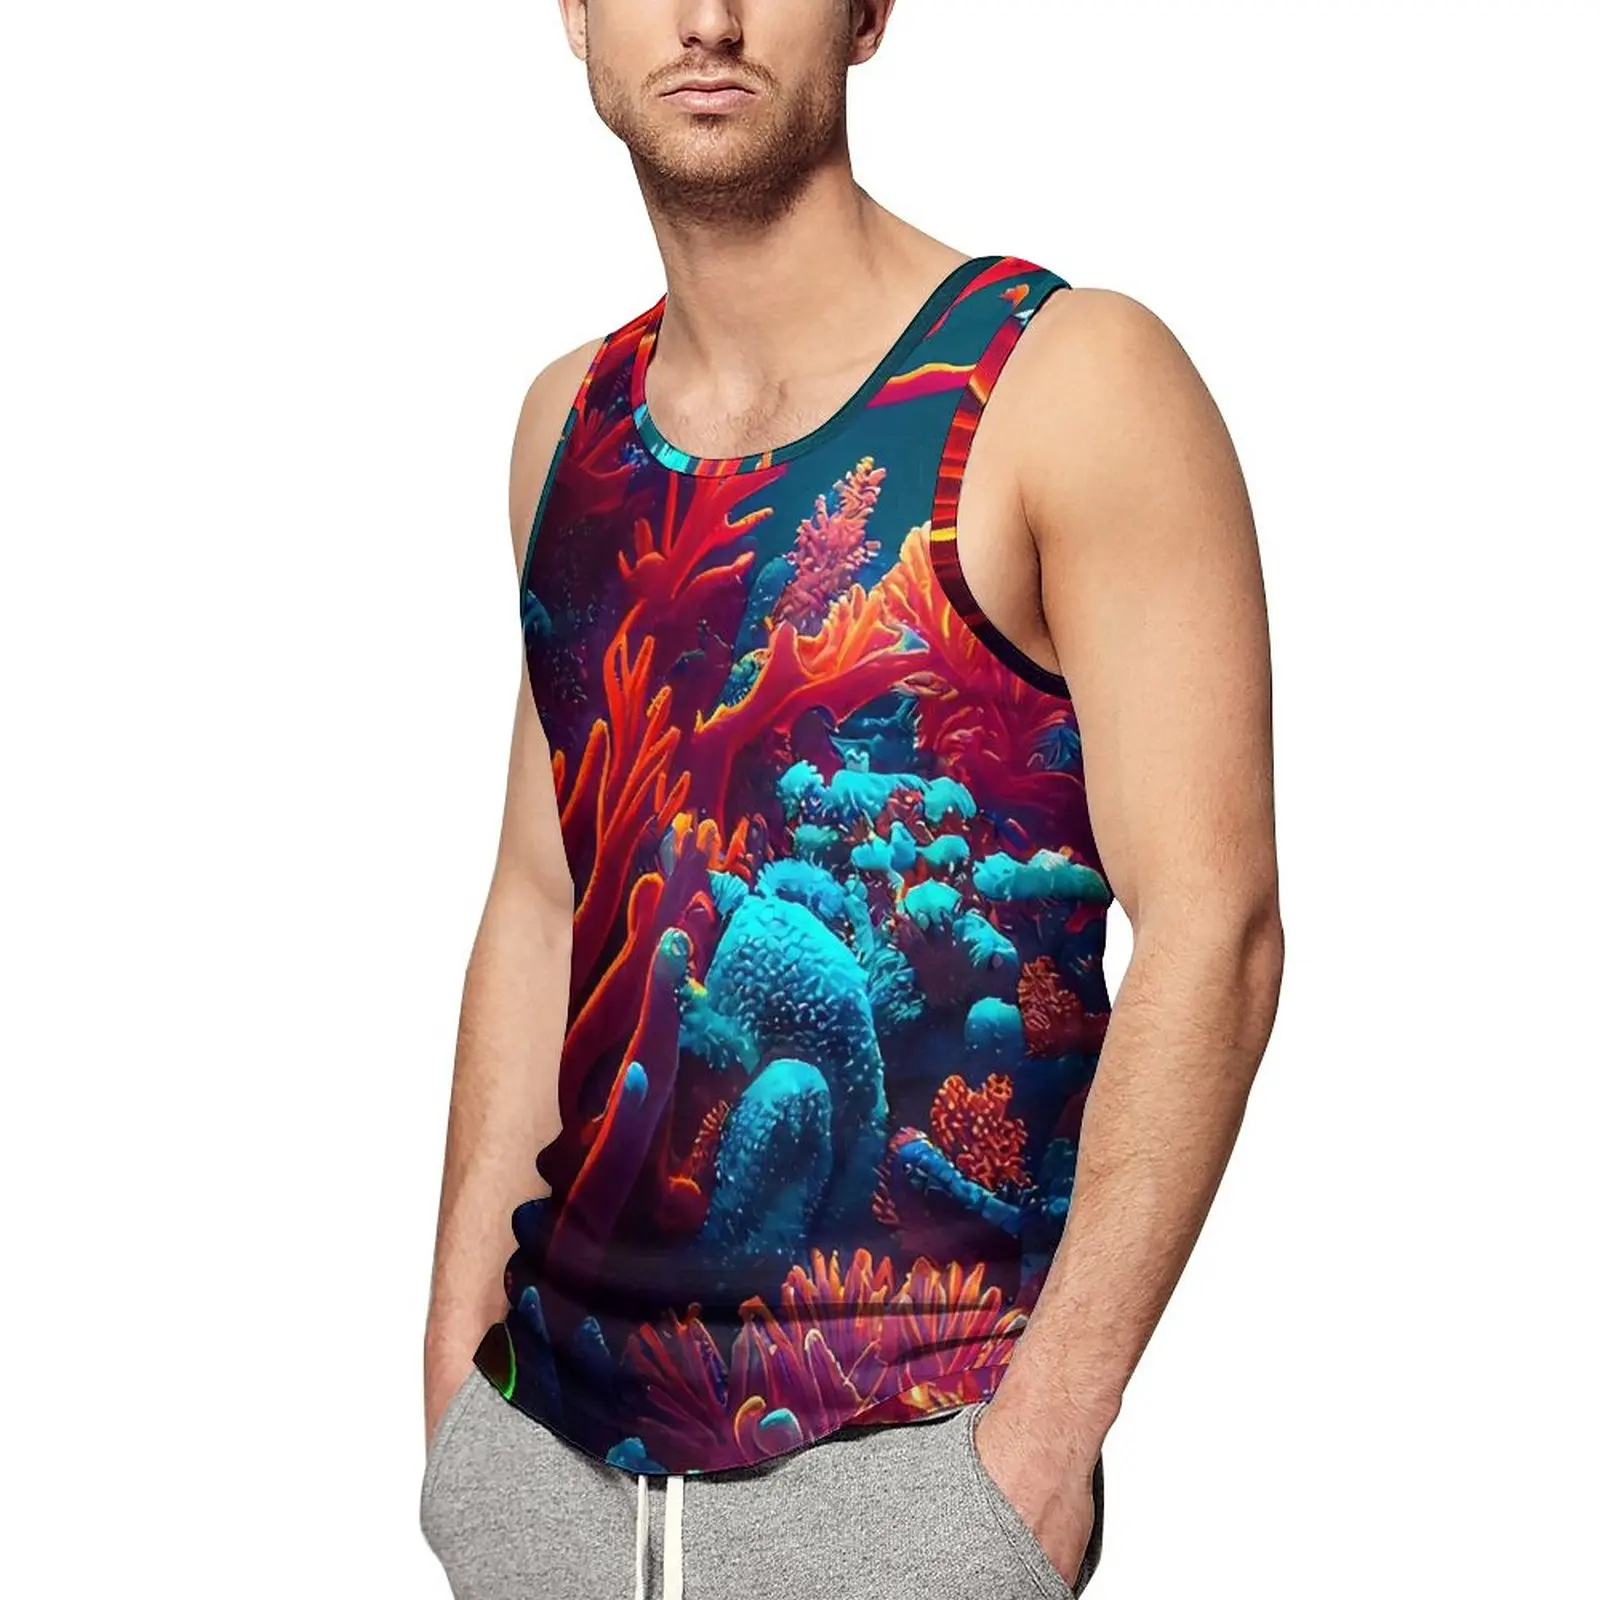 

Майка мужская с тропическим принтом, спортивная одежда с ярким коралловым принтом, рубашка без рукавов с графическим рисунком, летний топ для бодибилдинга, размеры 4XL, 5XL